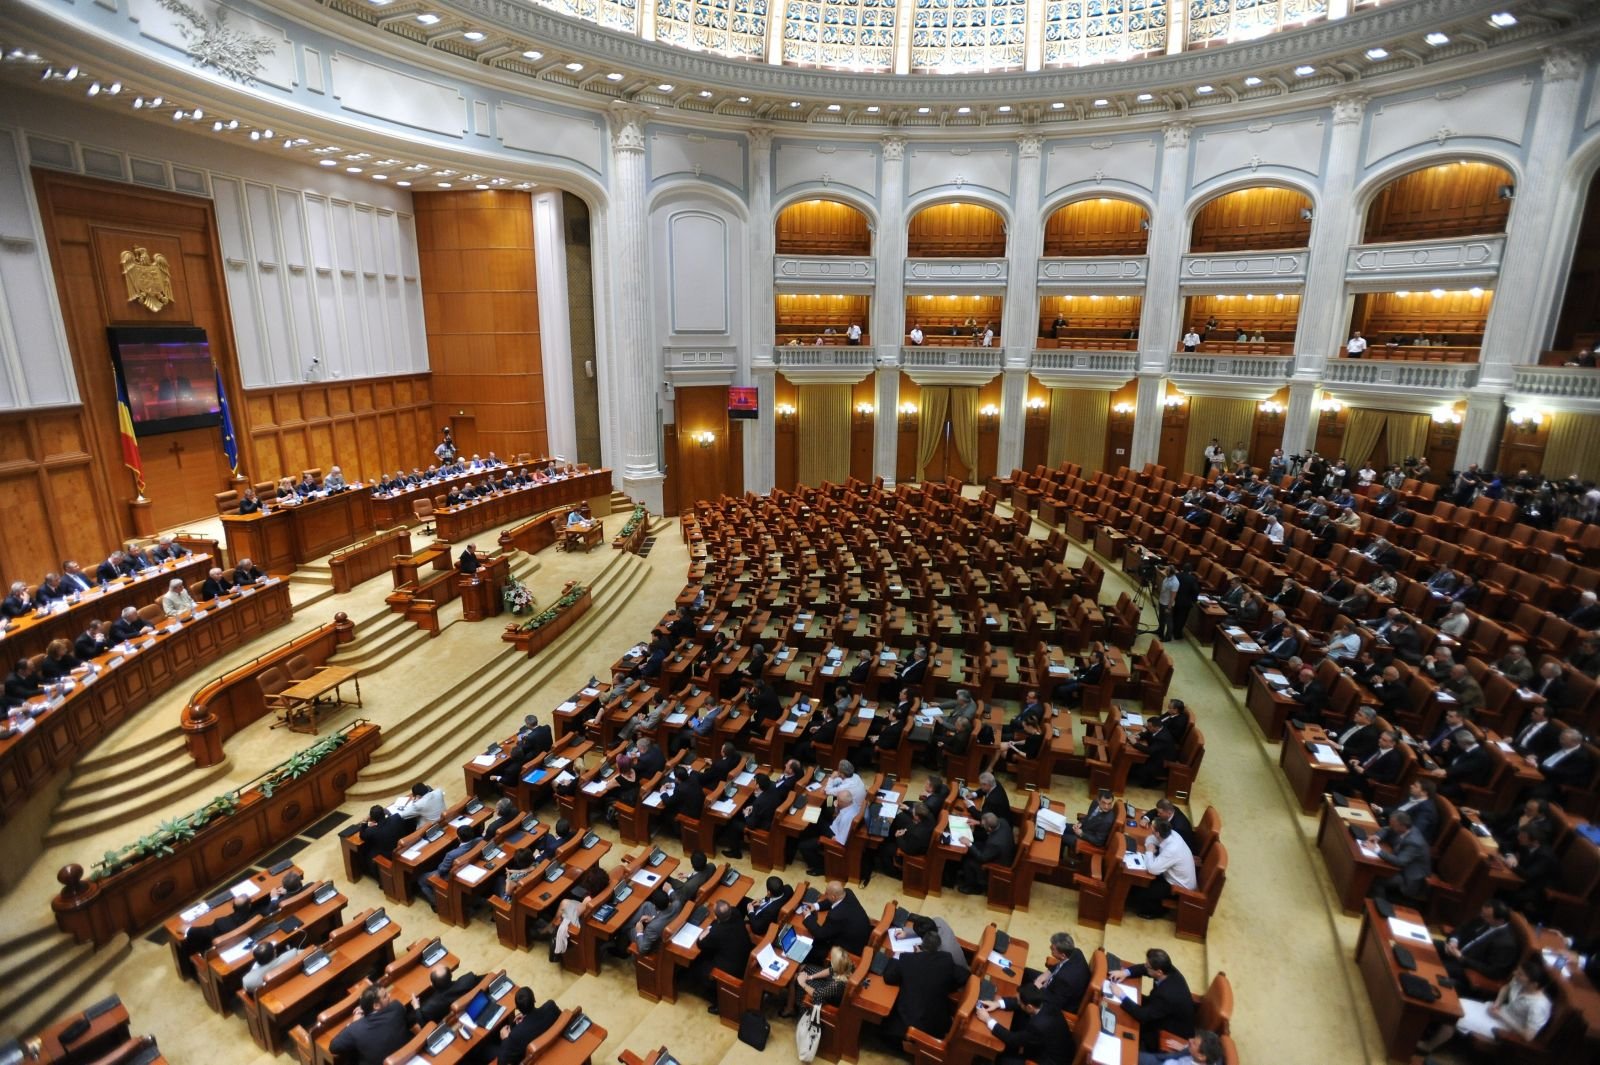  Senatul şi Camera Deputaţilor se întrunesc luni în prima sesiune ordinară